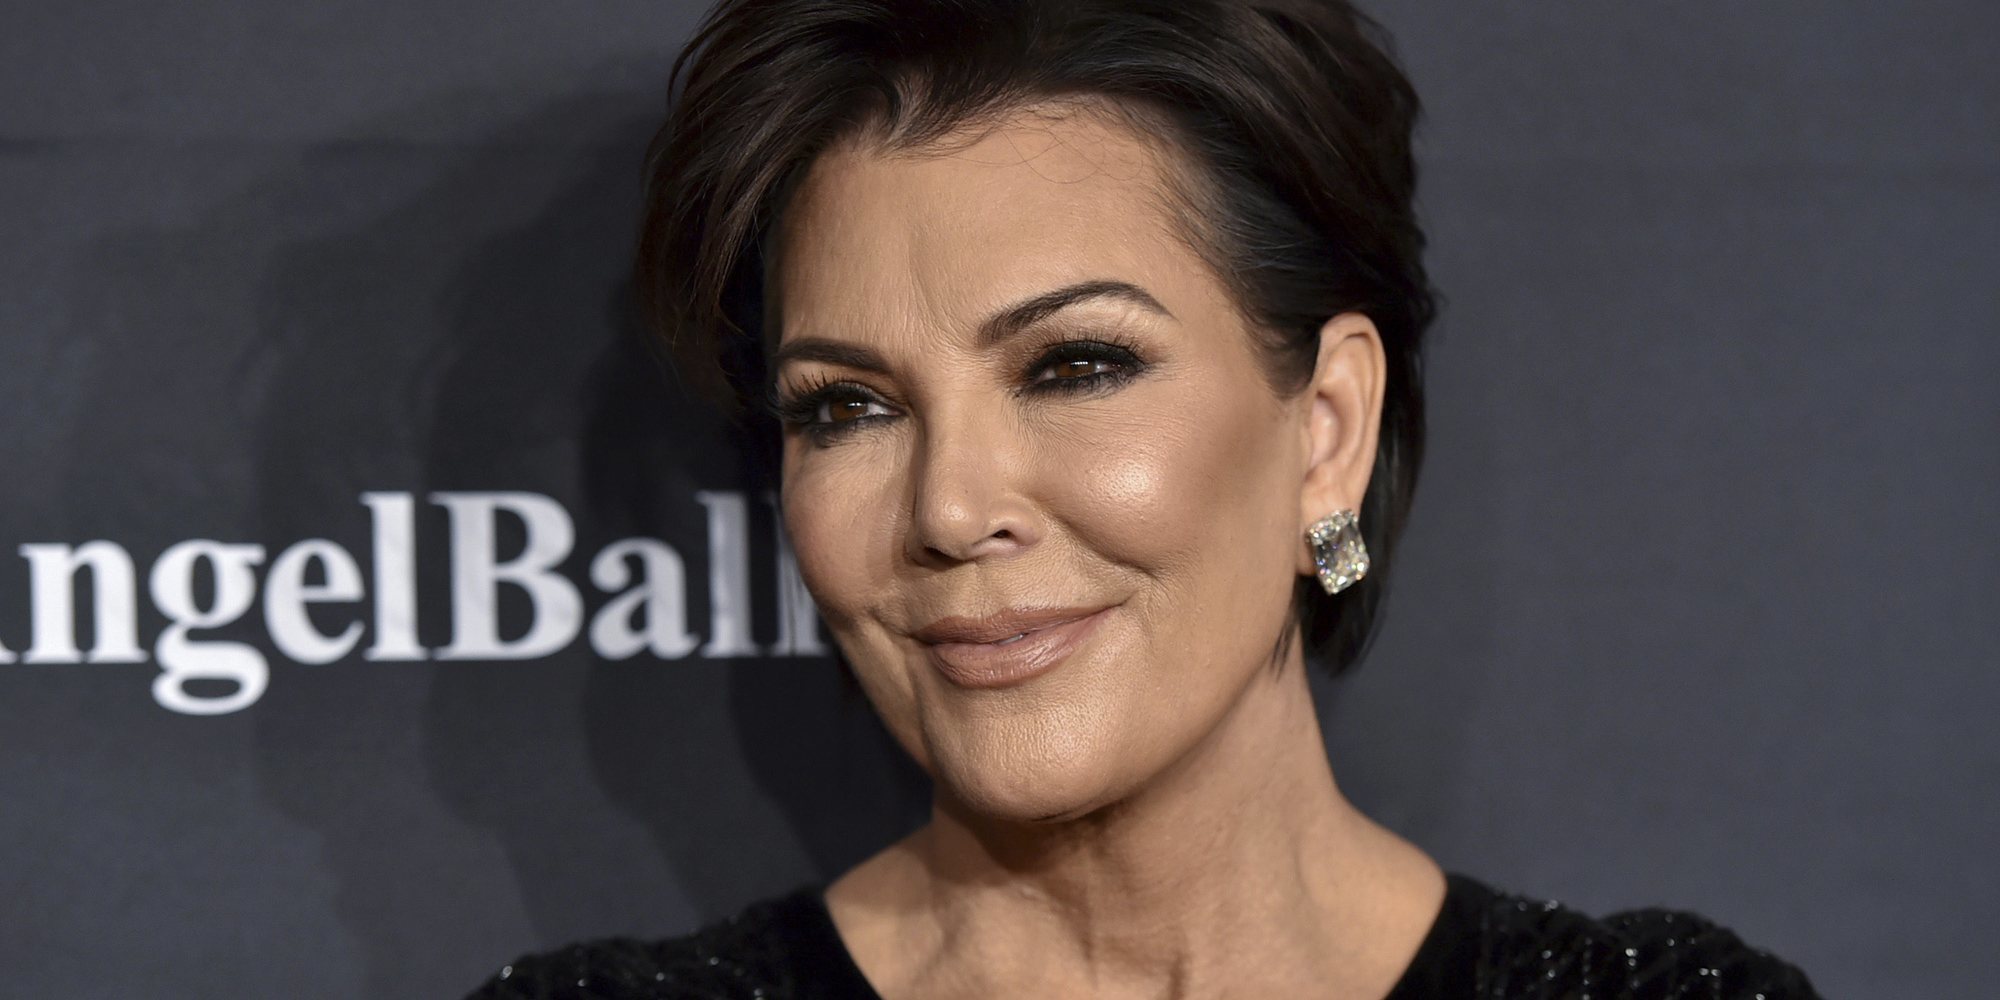 El exguardaespaldas de Kris Jenner presenta contra ella dos acusaciones más de abuso y discriminación